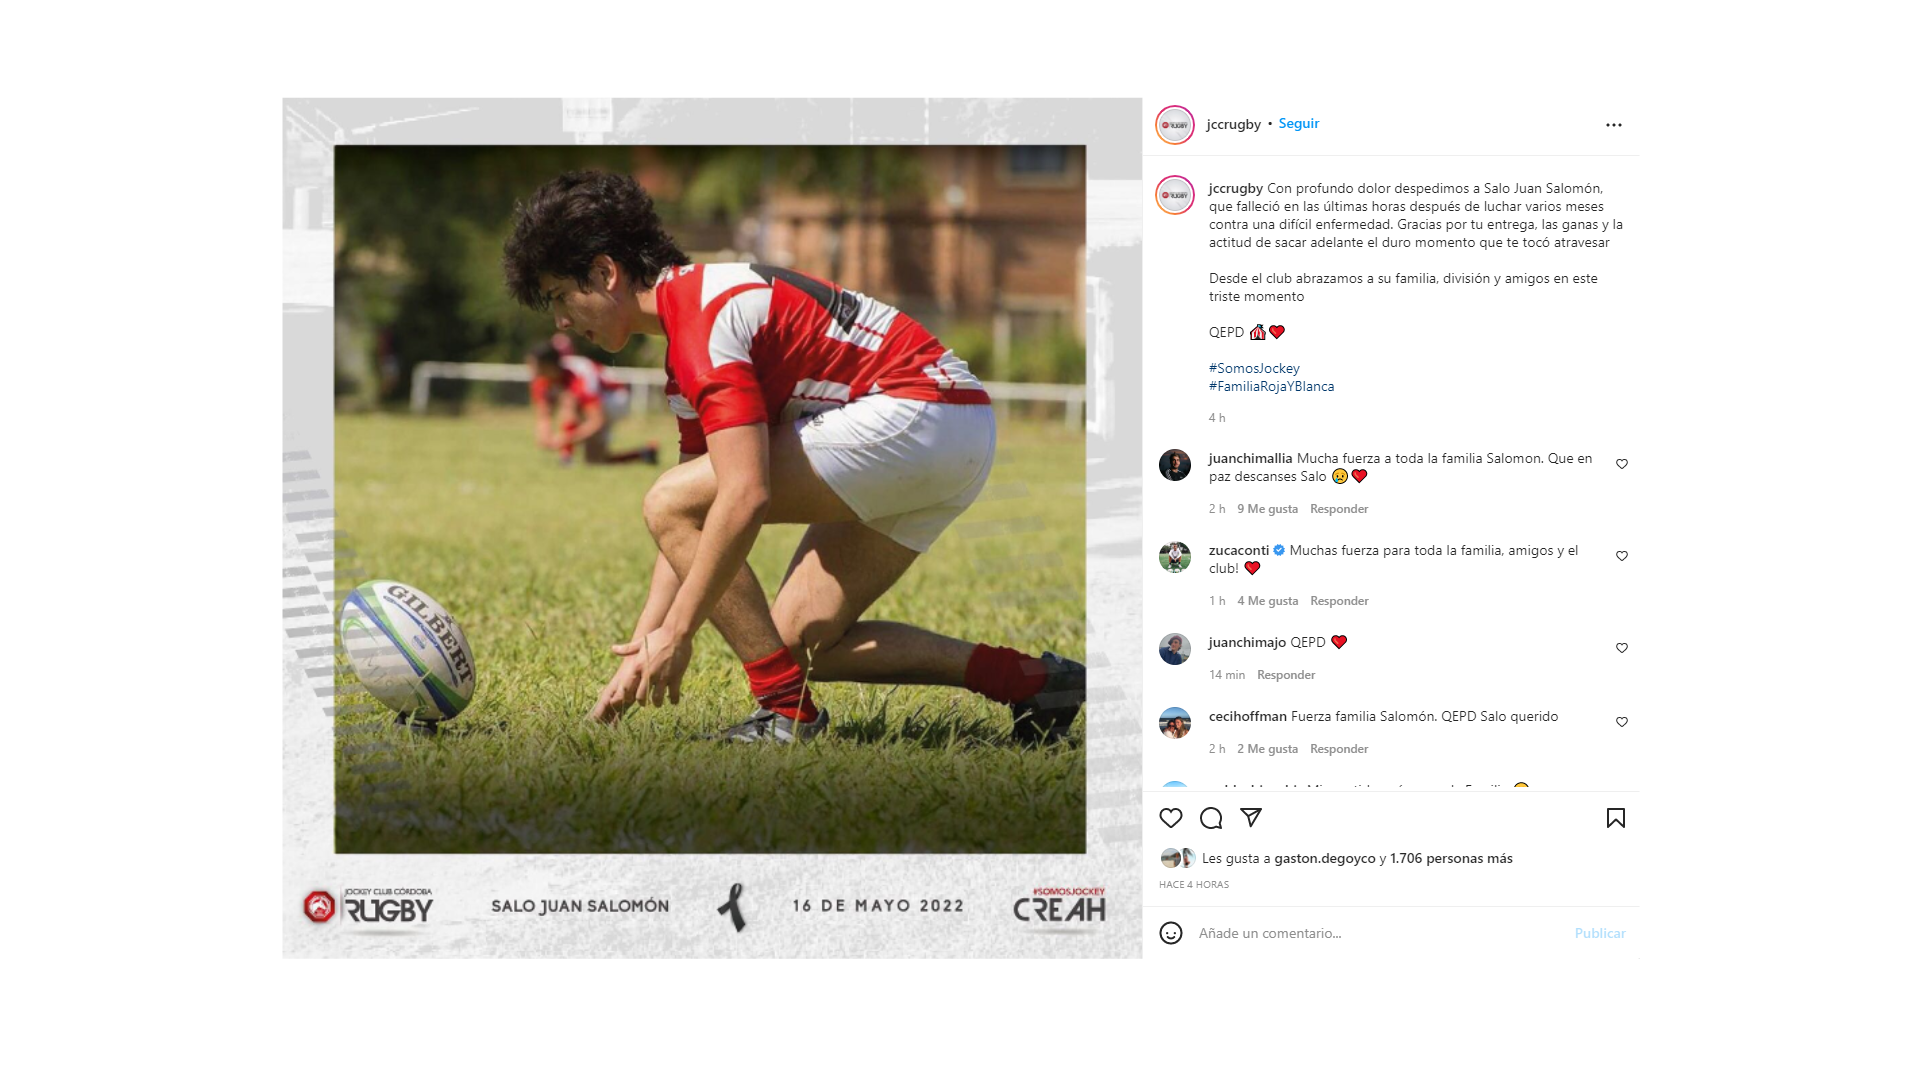 Falleció un jugador de rugby del Jockey Club Córdoba • Canal C